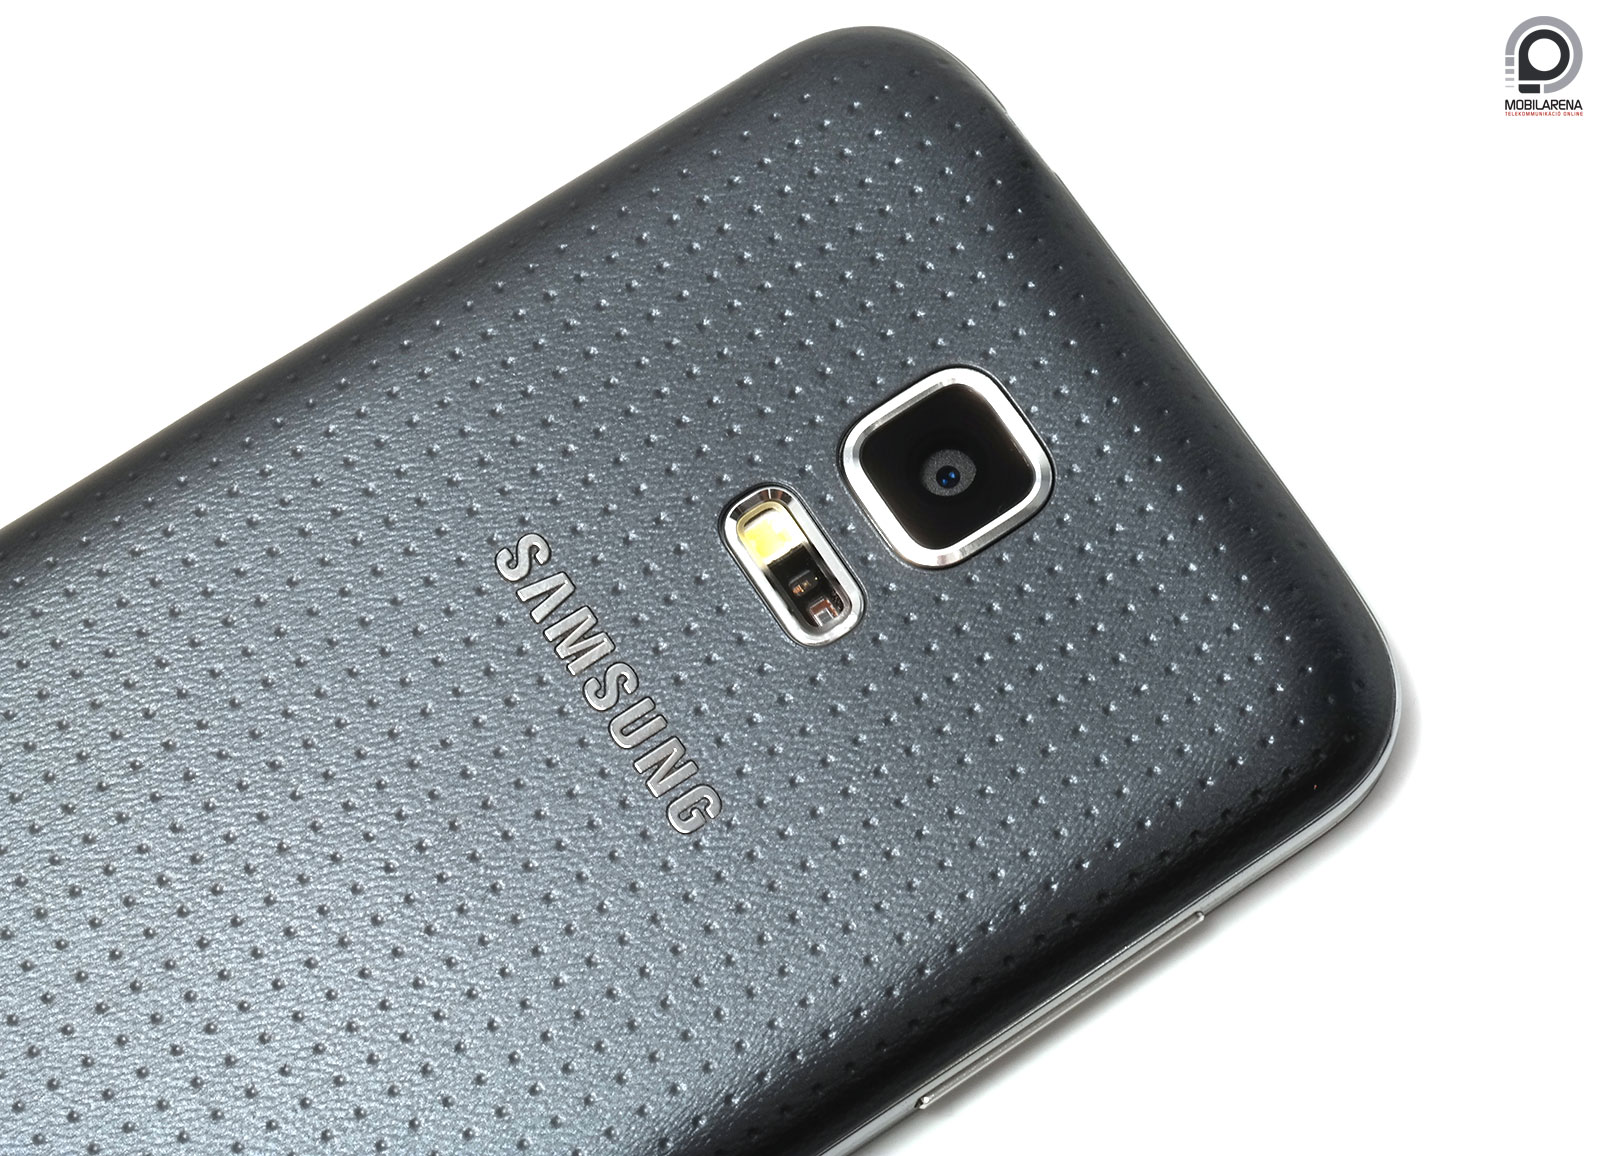 Samsung Galaxy S5 mini - a kisujj színre lép - Mobilarena Okostelefon teszt